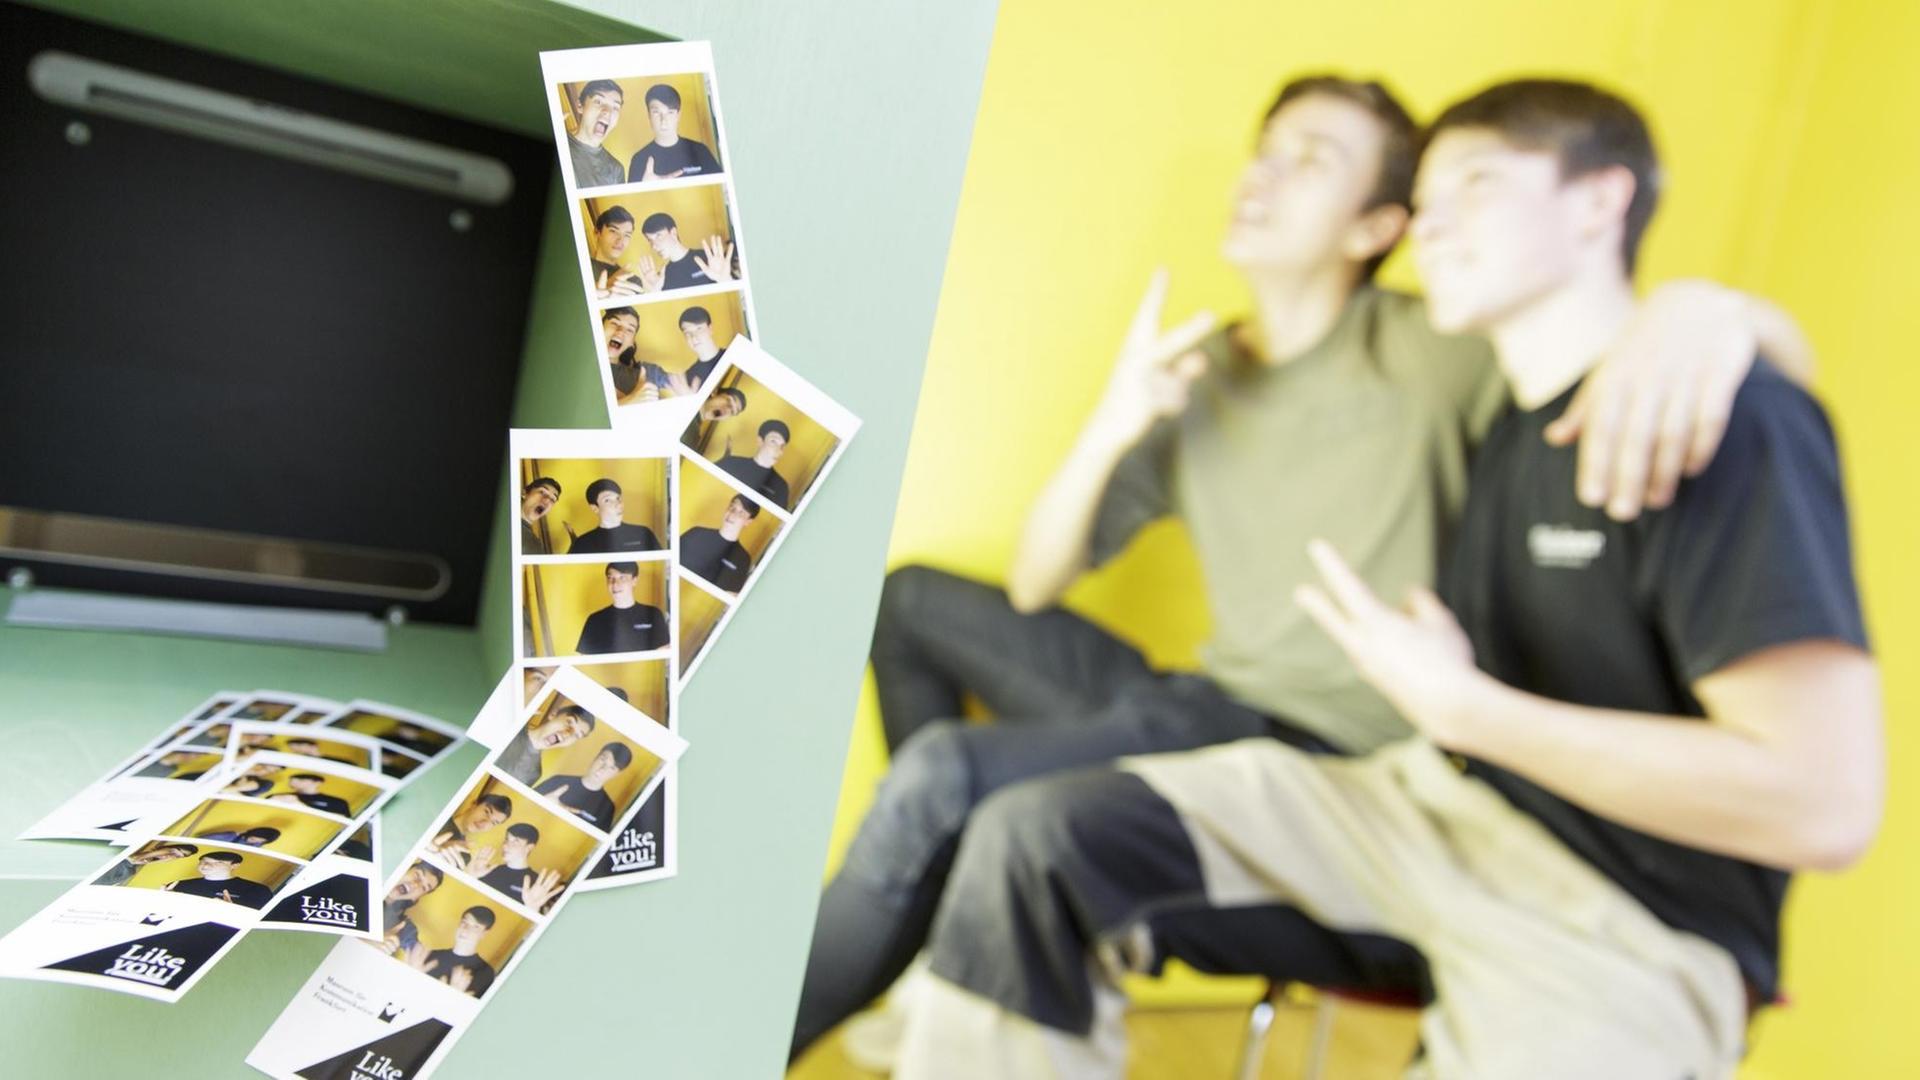 Ausstellungsbild der Ausstellung "Like you! Freundschaft digital und analog": Zwei Jugendliche sitzen zusammen in einer Fotobox, in der gemeinsame Bilder entstehen.